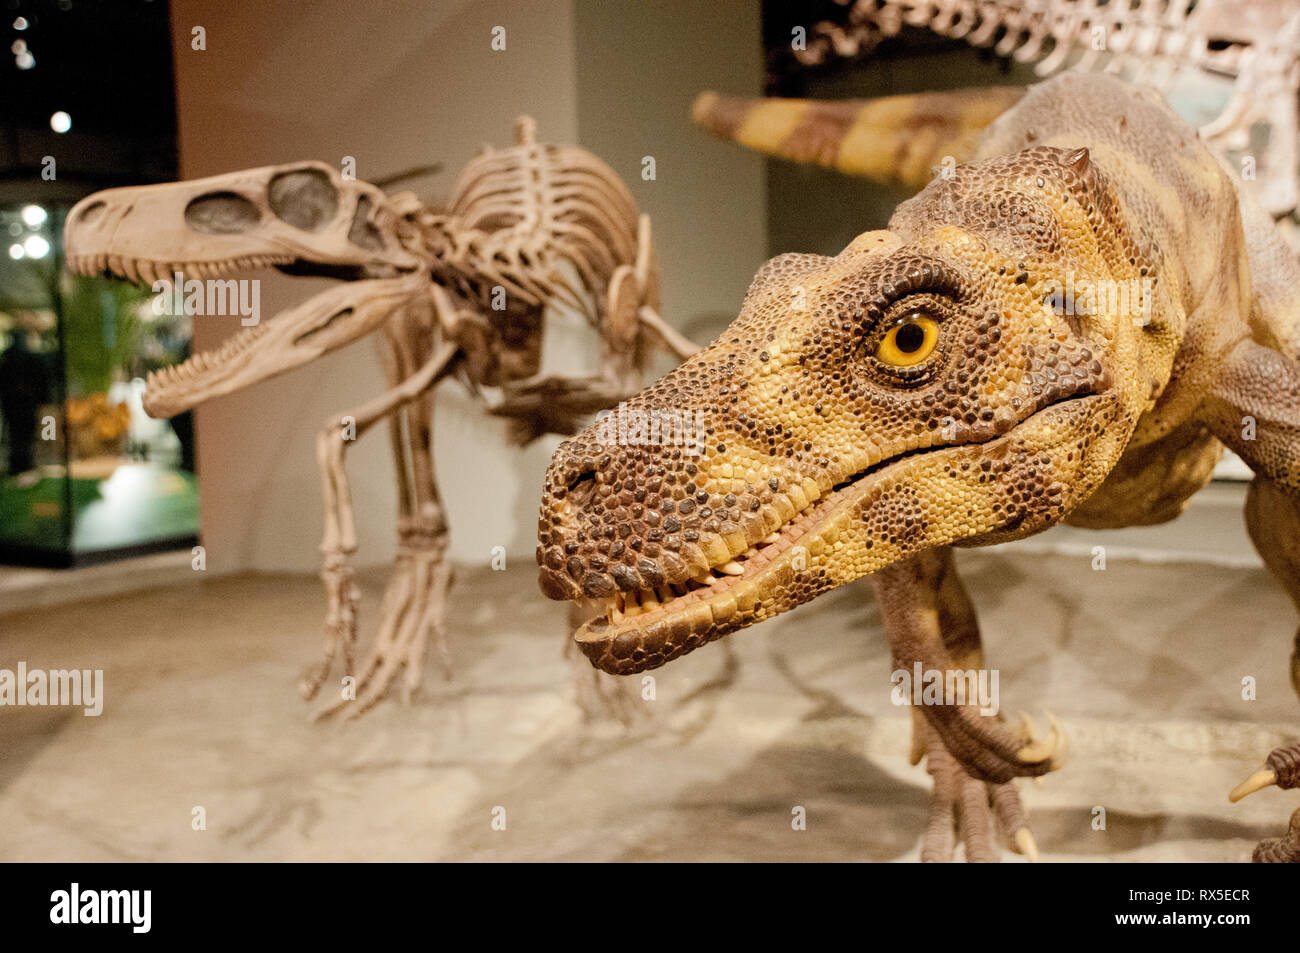 Herrerasaurus ischigualastensis hi-res stock photography and images - Alamy